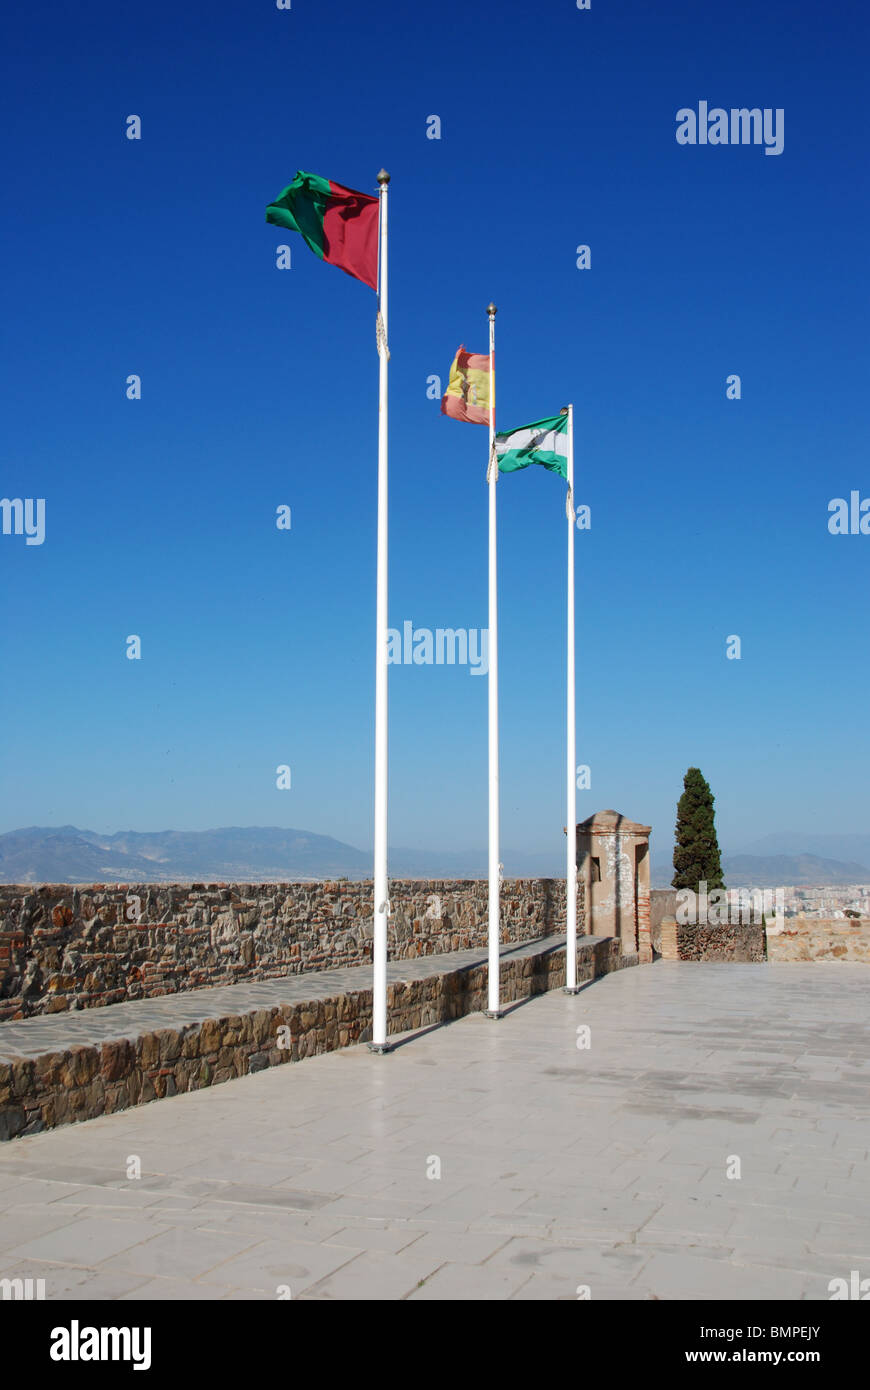 Flagpoles, Gibralfaro castle (Castillo de Gibralfaro), Malaga, Costa del Sol, Malaga Province, Andalucia, Spain, Western Europe. Stock Photo